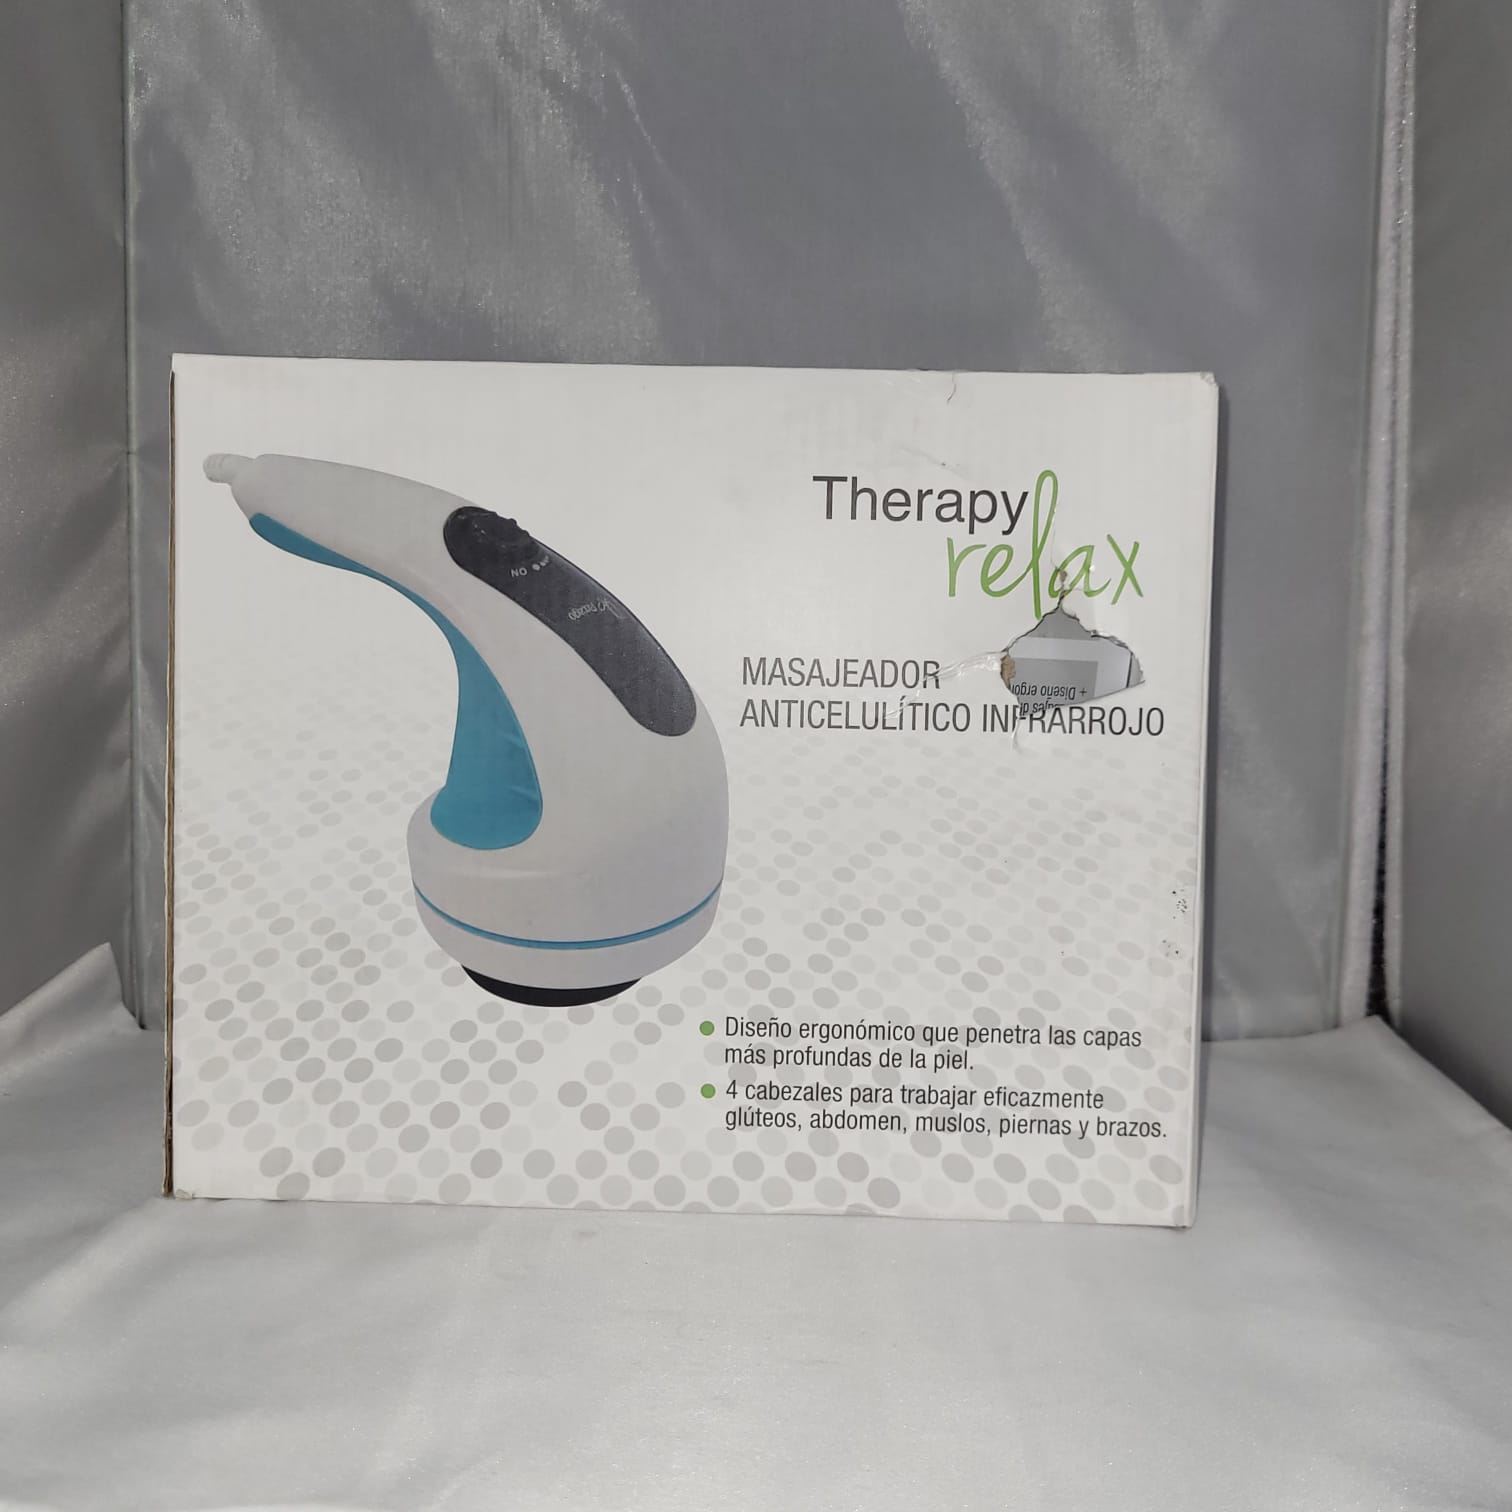 Masajeador anticelulítico infrarrojo therapy relax [Openbox]